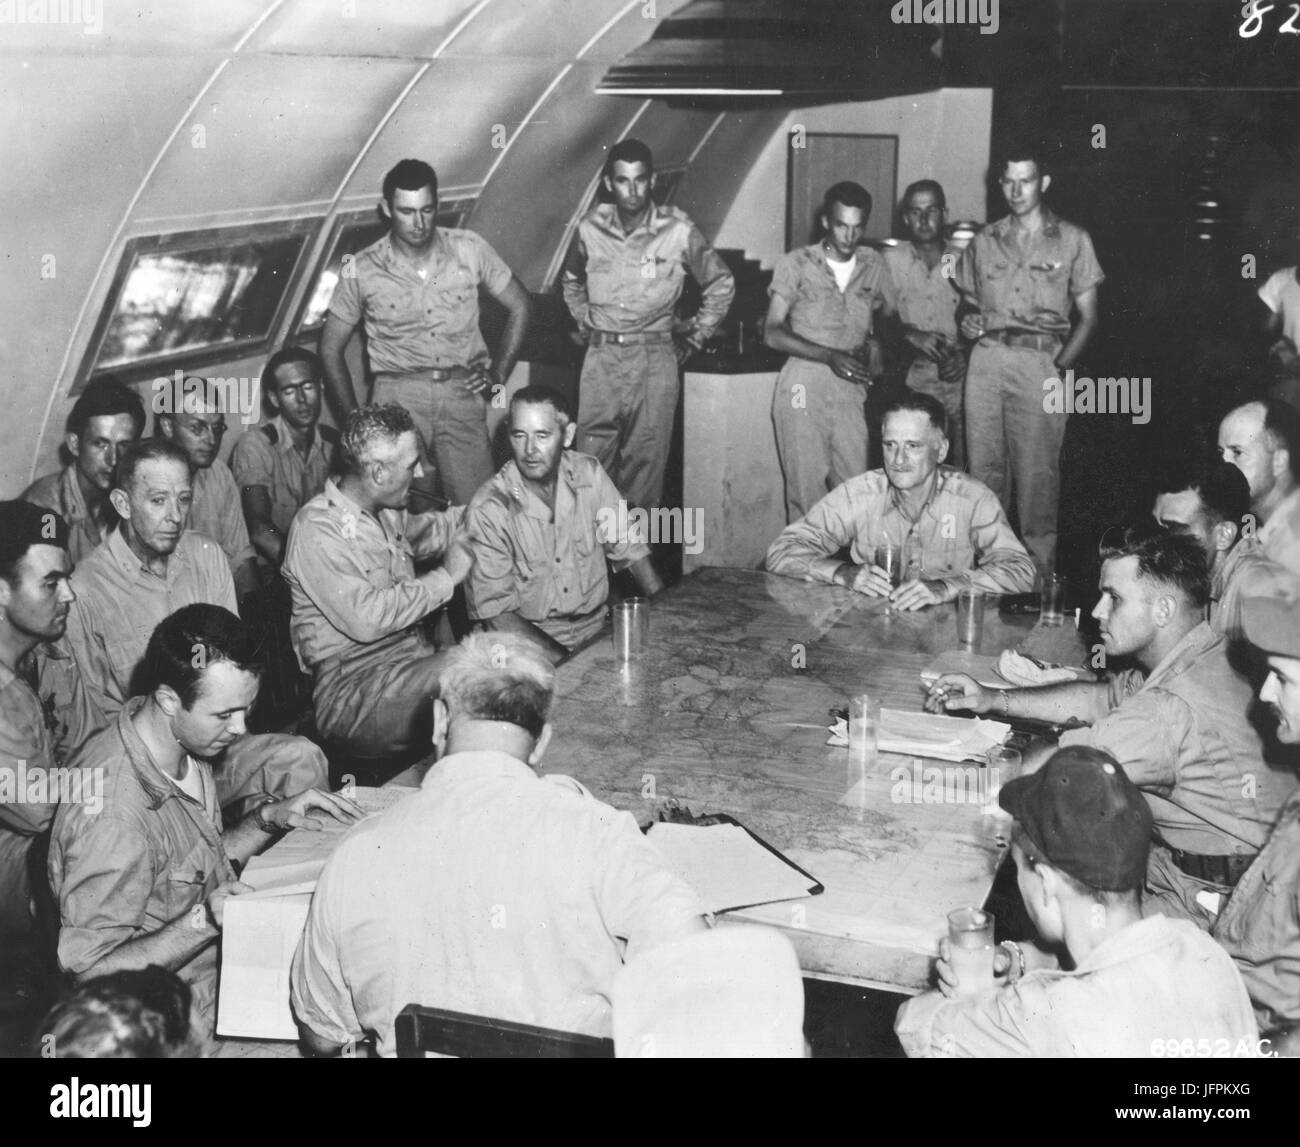 Lt. General Nathan Twining, Generalleutnant Barney M. Giles und General Carl Spaatz (von links nach rechts um Tisch) besuchen die Nachbesprechung der 509. Composite-Gruppe, der die erste Atombombenabwürfe auf Hiroshima, Japan beteiligt. Tinian, 6. August 1945. Stockfoto